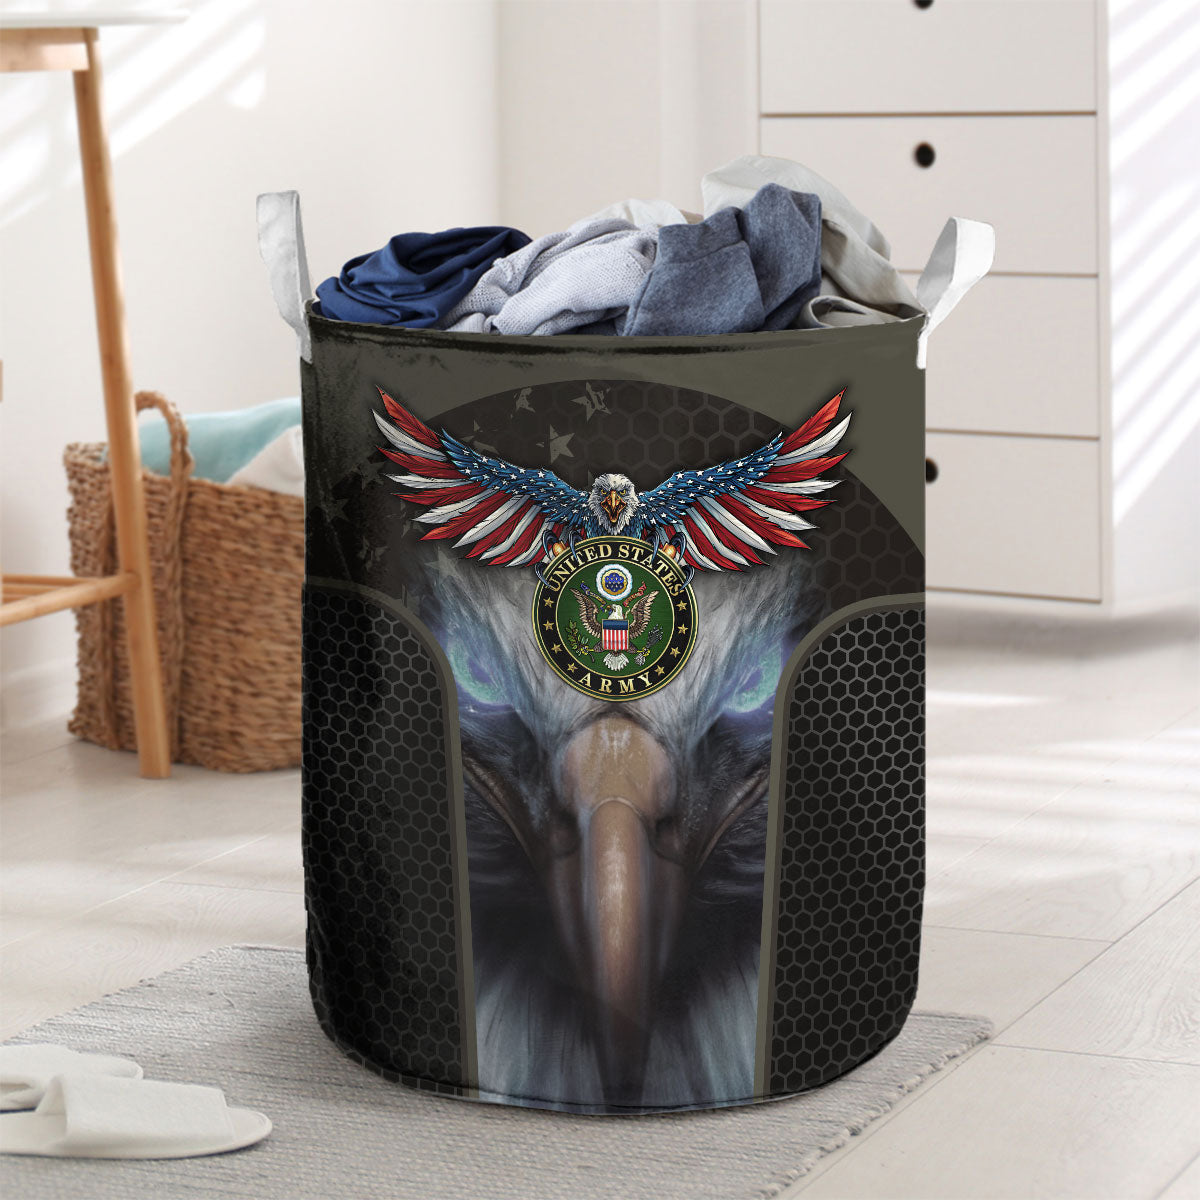 U.S. Army Laundry Basket